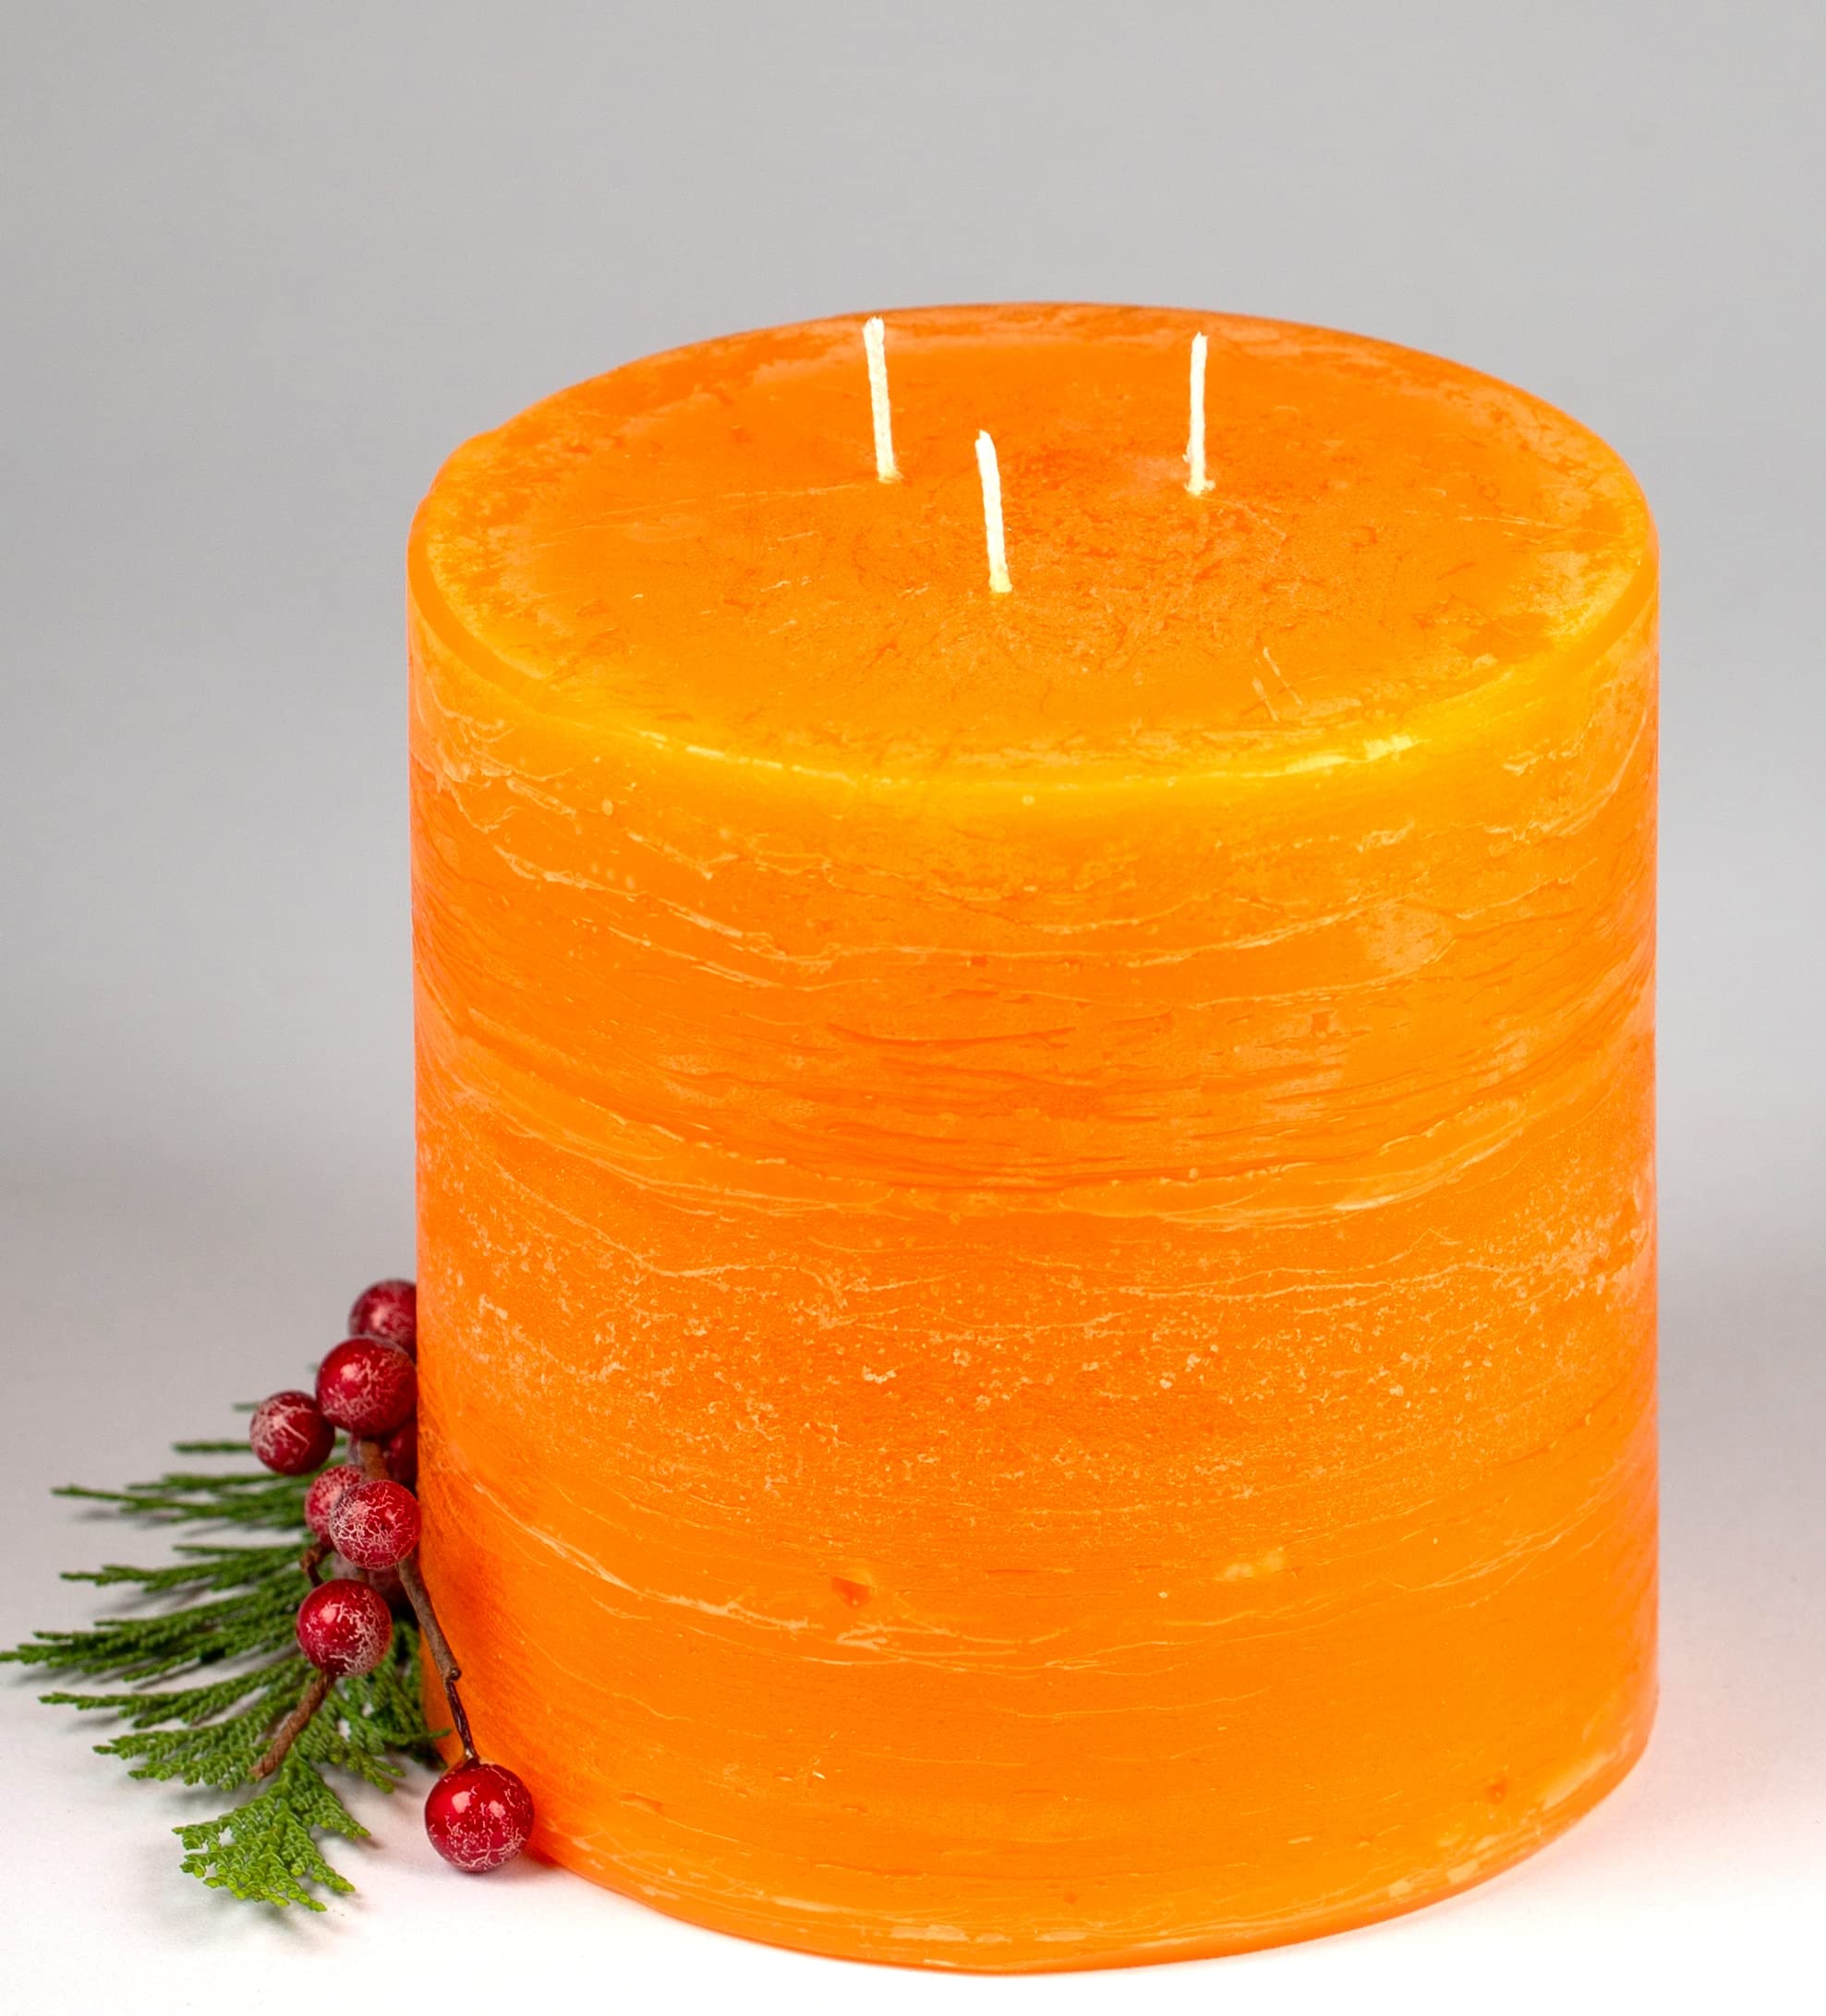 Kerzen Junglas 3 Docht Rustic-Kerze mit Struktur, Farbe: Mandarin-Orange - Höhe: 12 x 12 cm Ø. Eine schöne Rustik-Kerze für Ihr Zuhause. 3 Wick Pillar Candles. (4002)